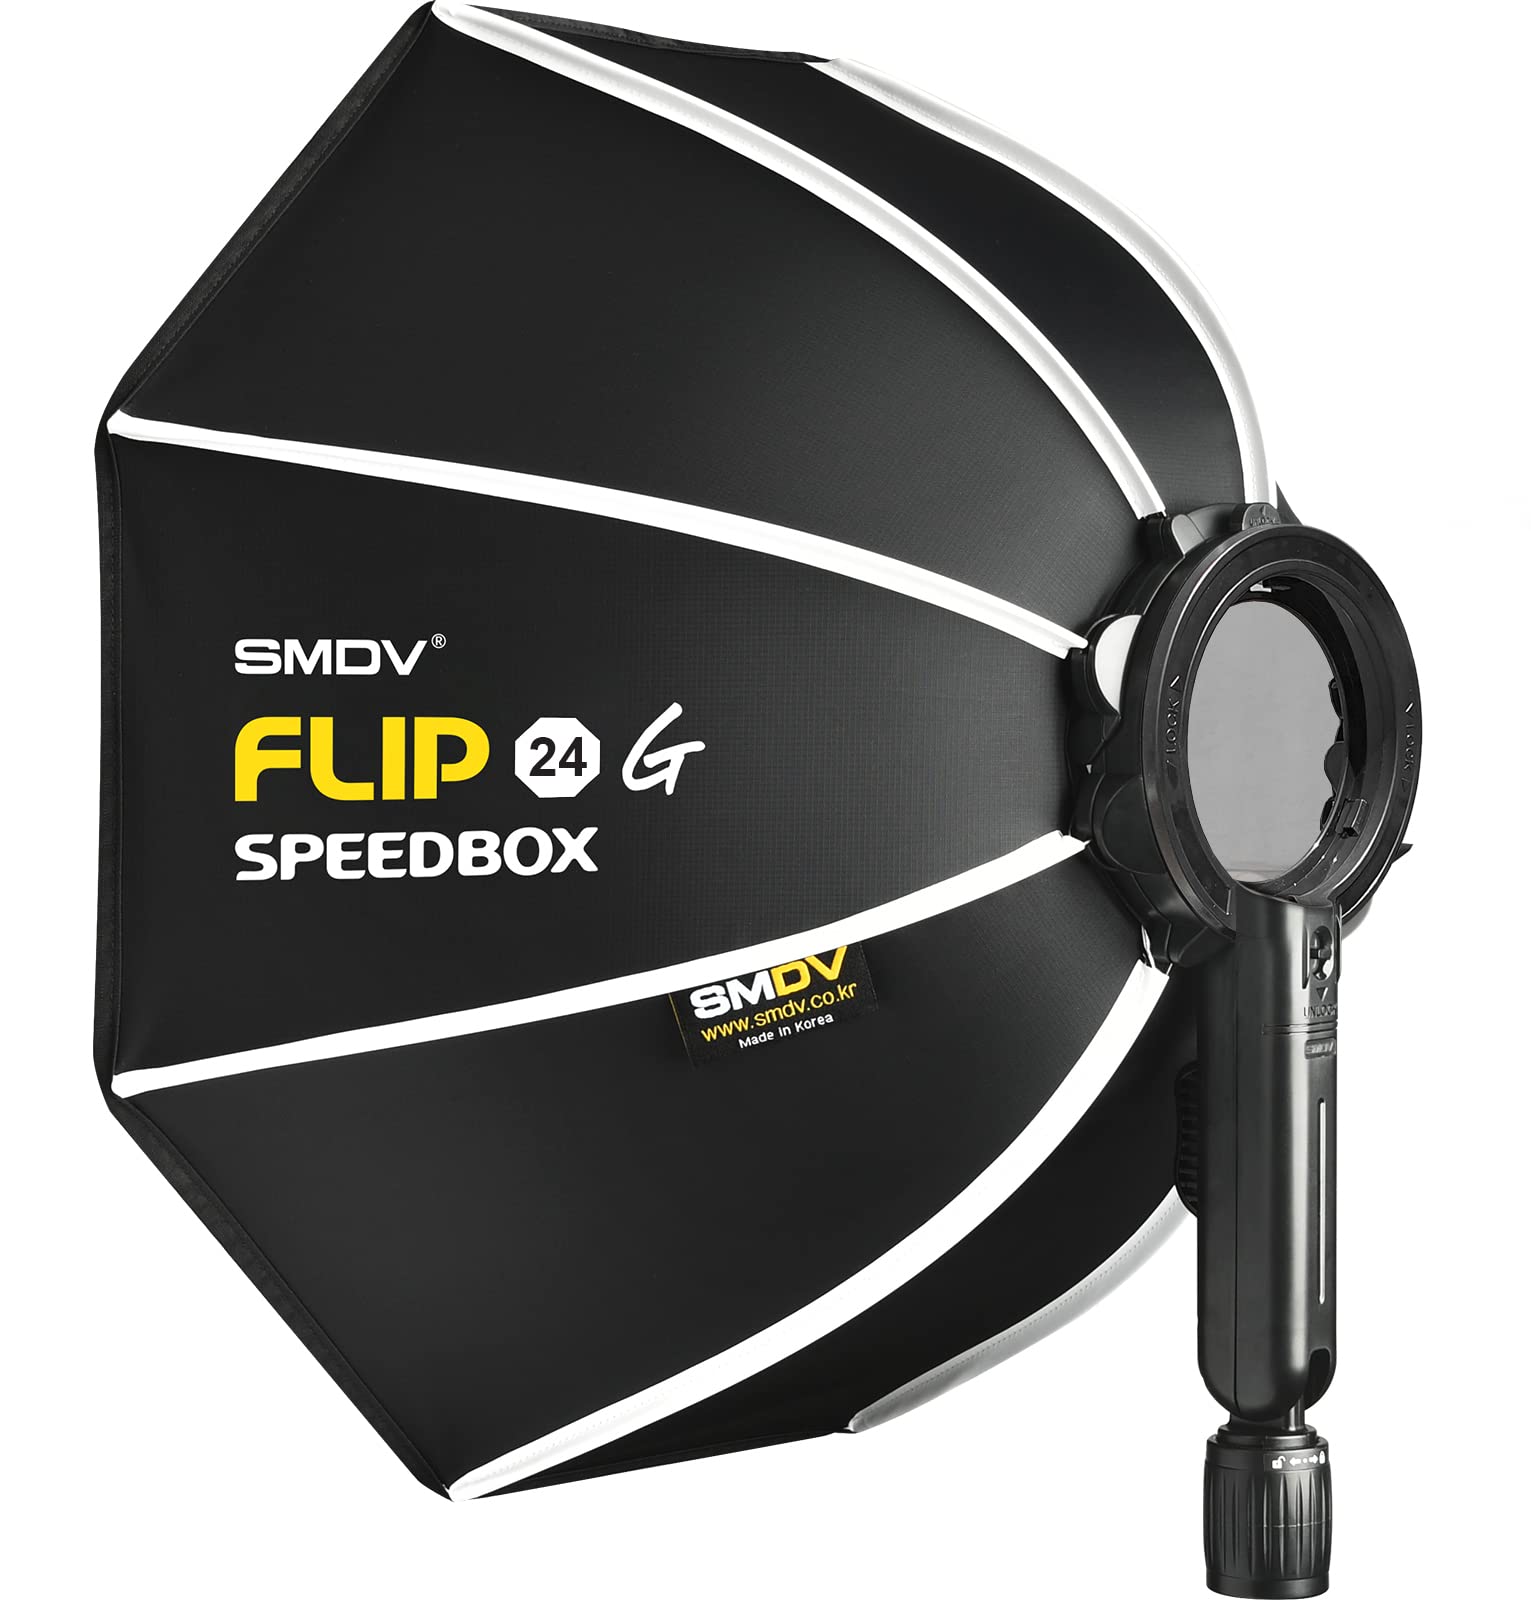 Impulsfoto SMDV Softbox Speedbox-Flip G 24 | 60cm Ø | Einsatzbereit in 1 Sekunde